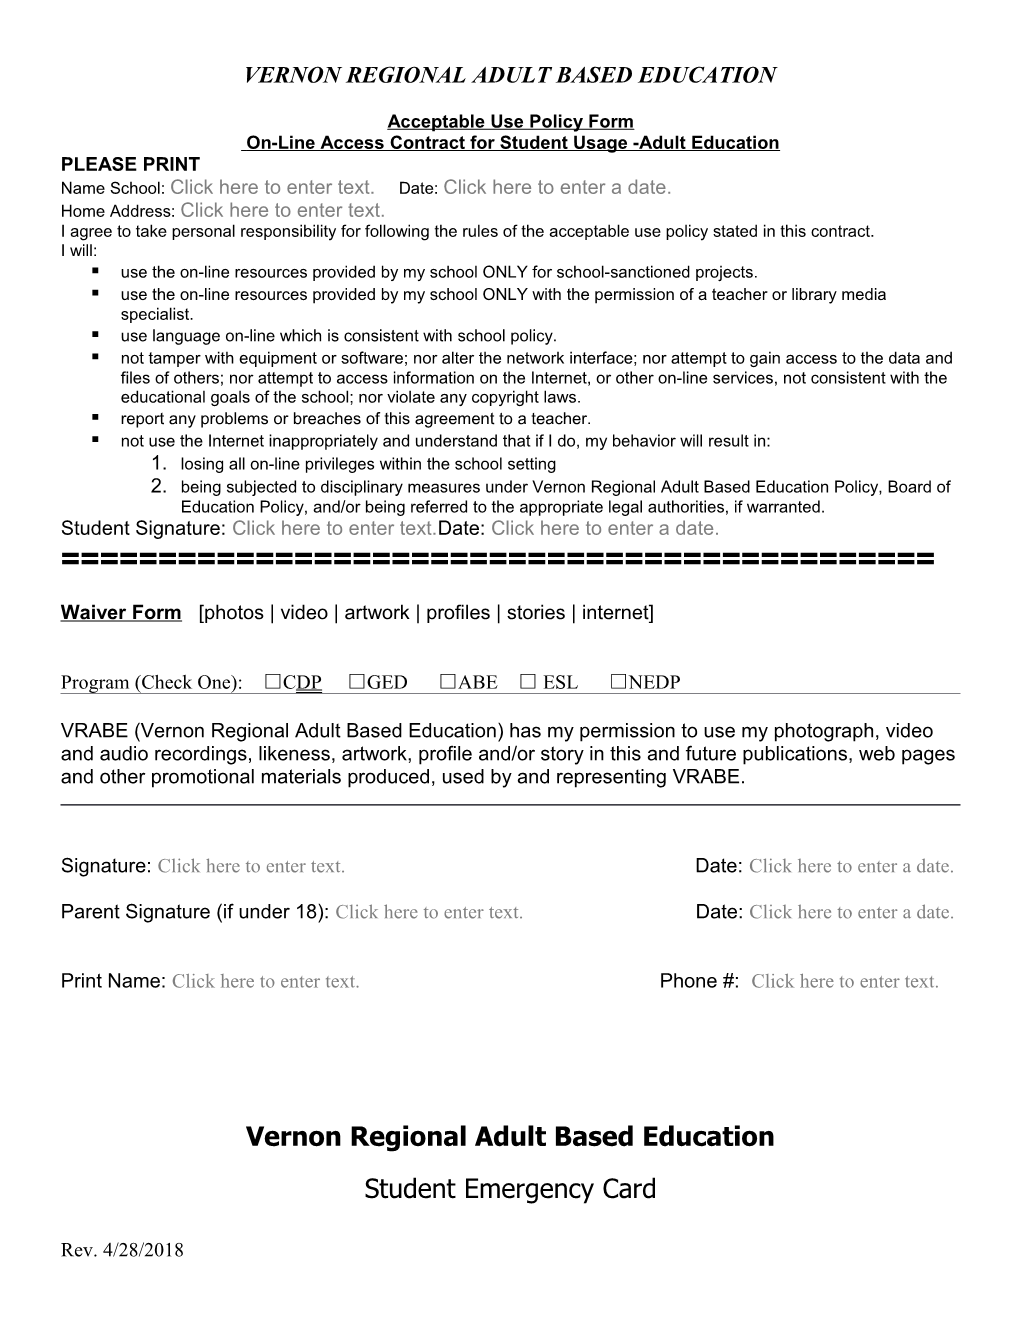 Vernon Regional Adult Based Education